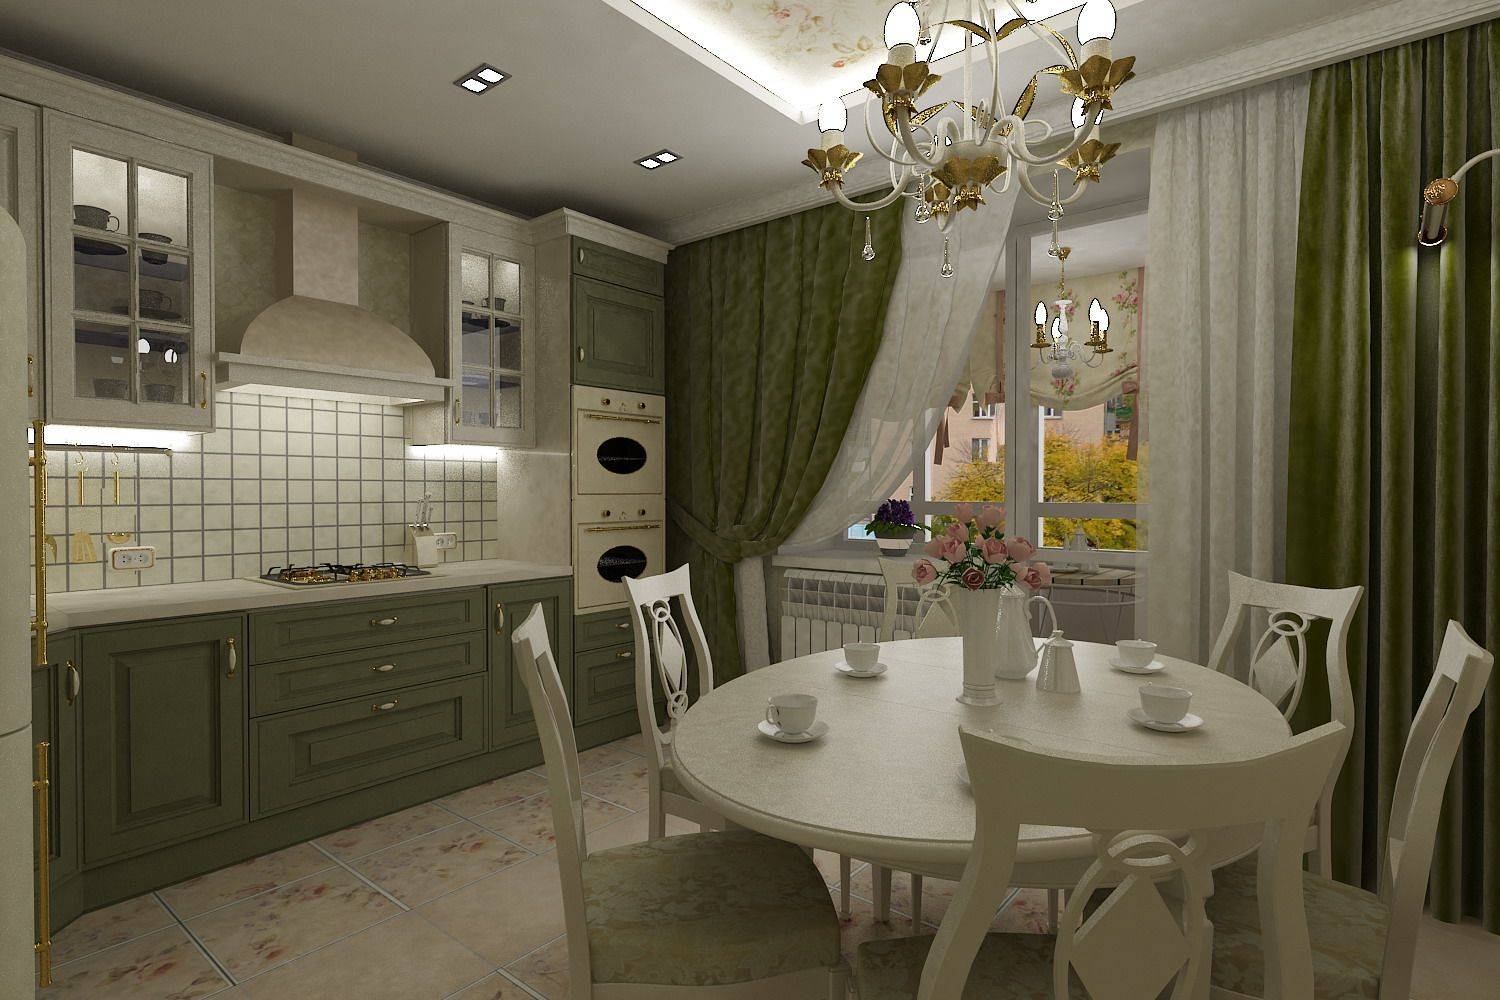 Кухня-гостиная 9 кв. м: дизайн, фото с диваном, идеи расстановки мебели